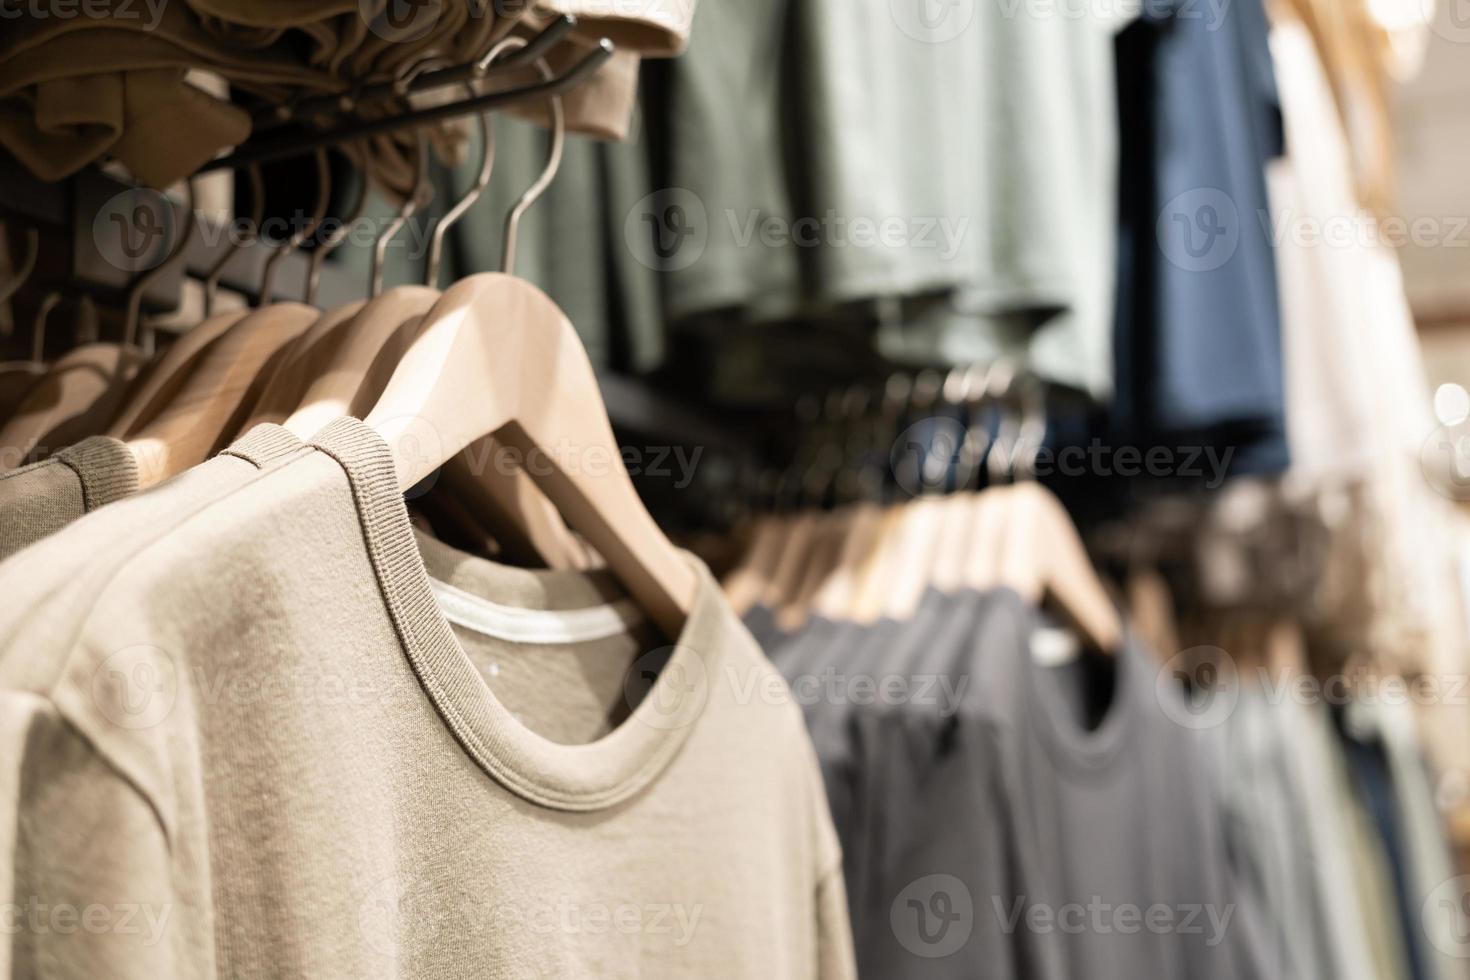 selektivt fokus, mode, klädkoncept, kläder eller byxor många färger hänger på en hylla i en märkesbutik. mycket pastellfärgat foto